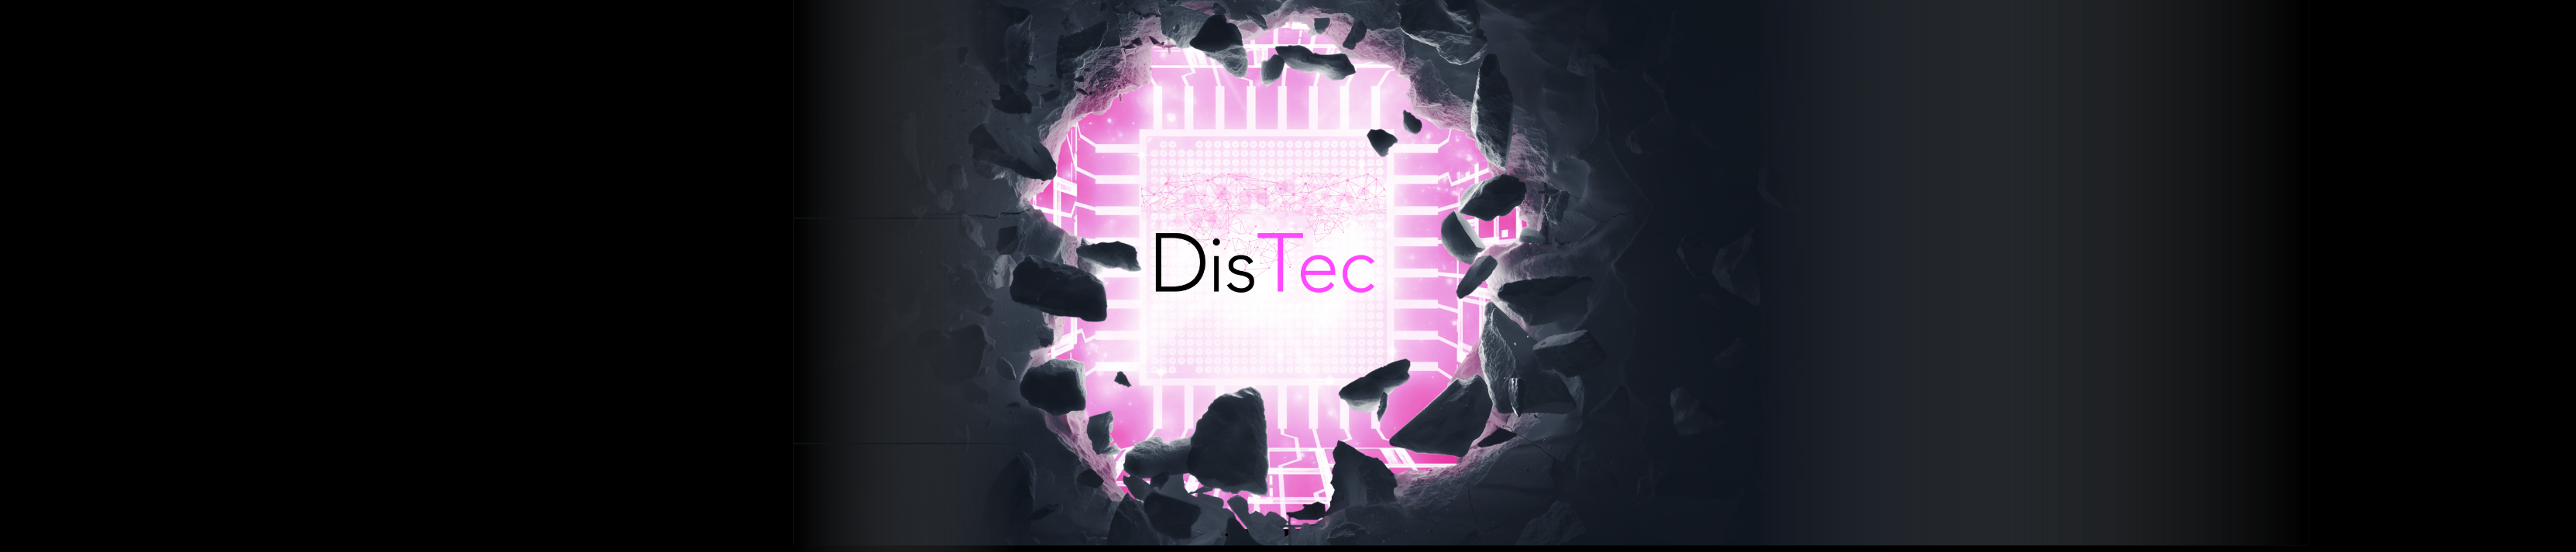 Distec banner logo